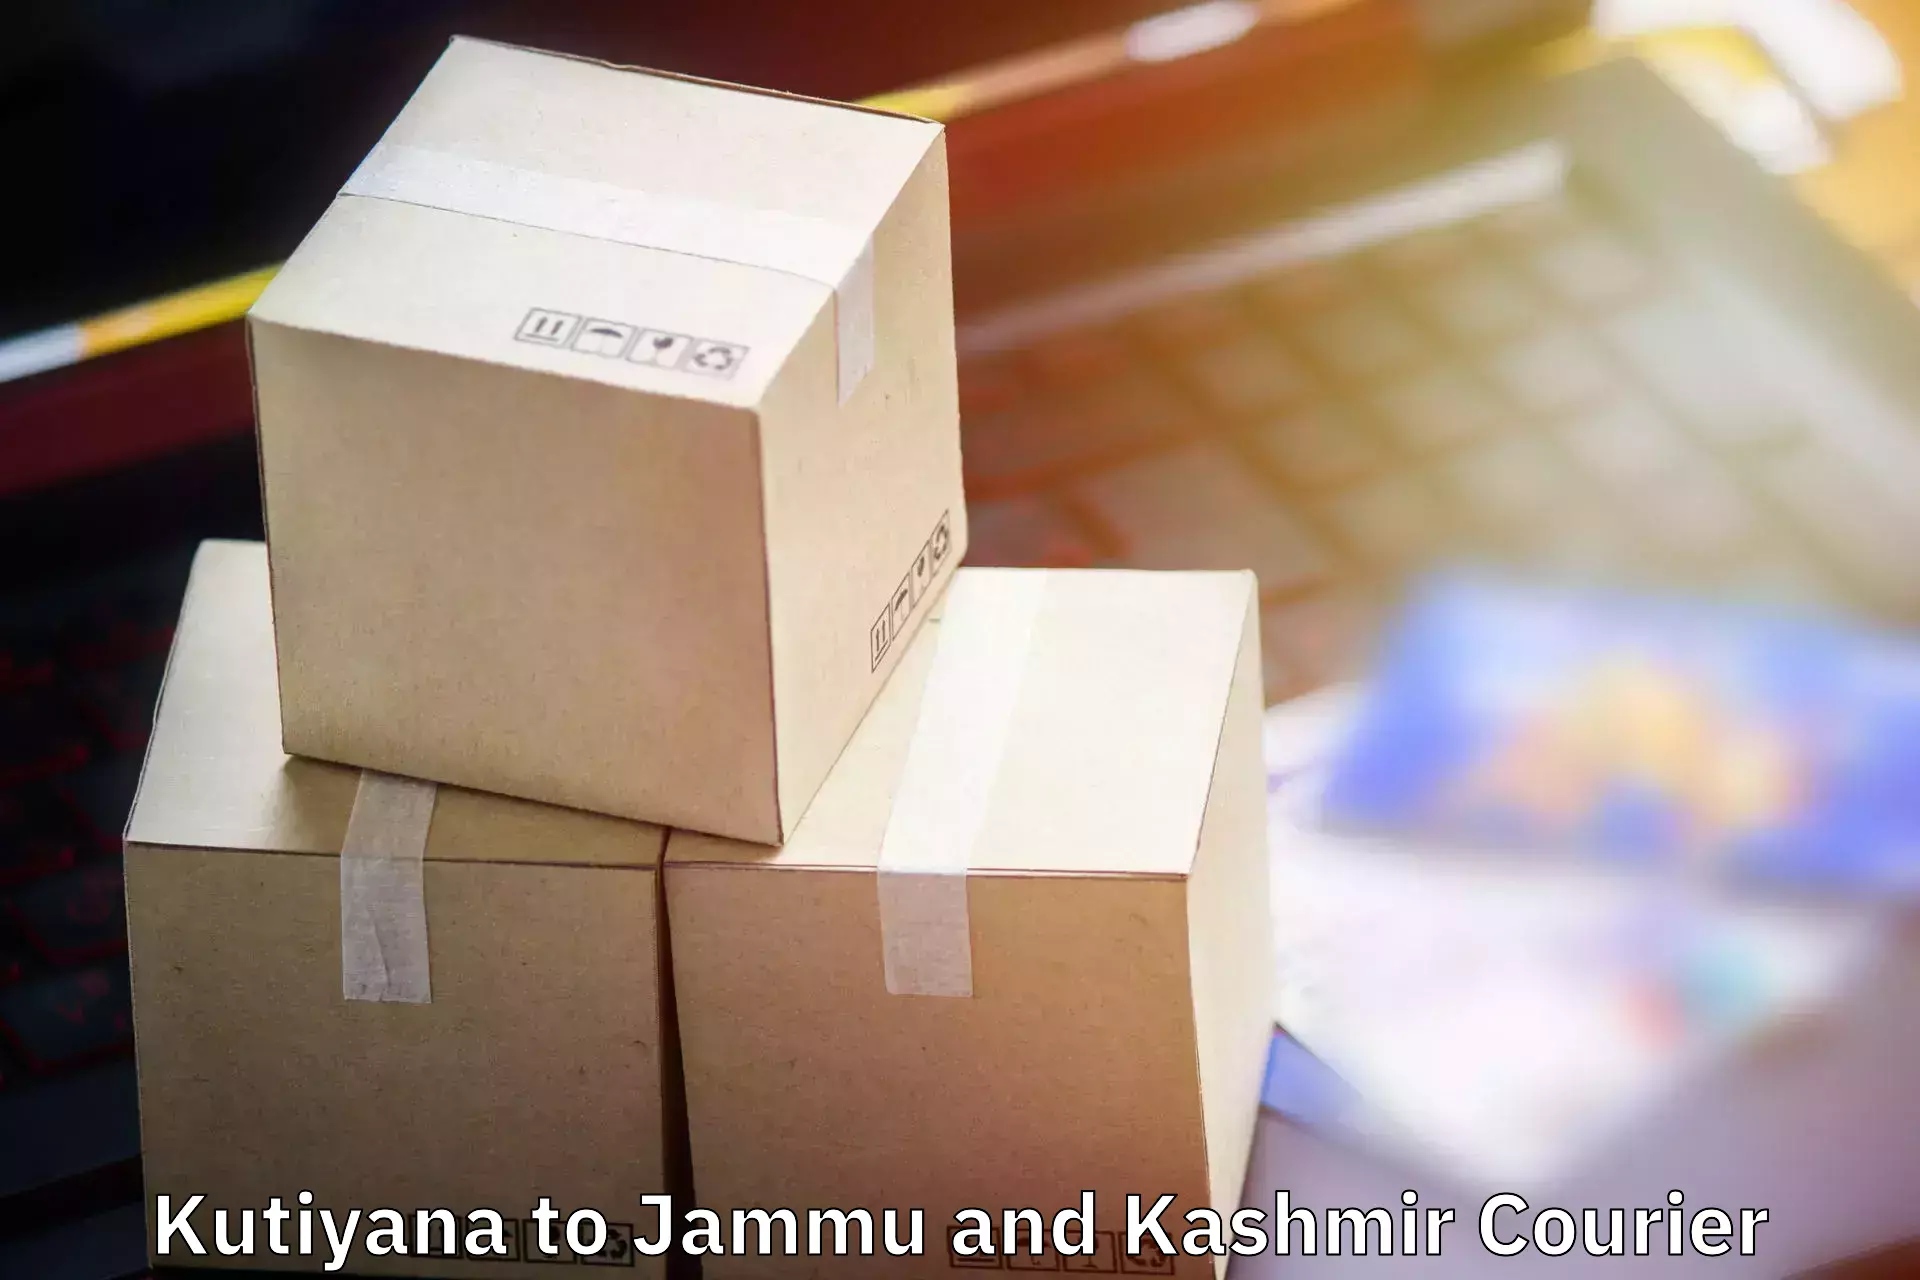 Luggage delivery network Kutiyana to Kishtwar